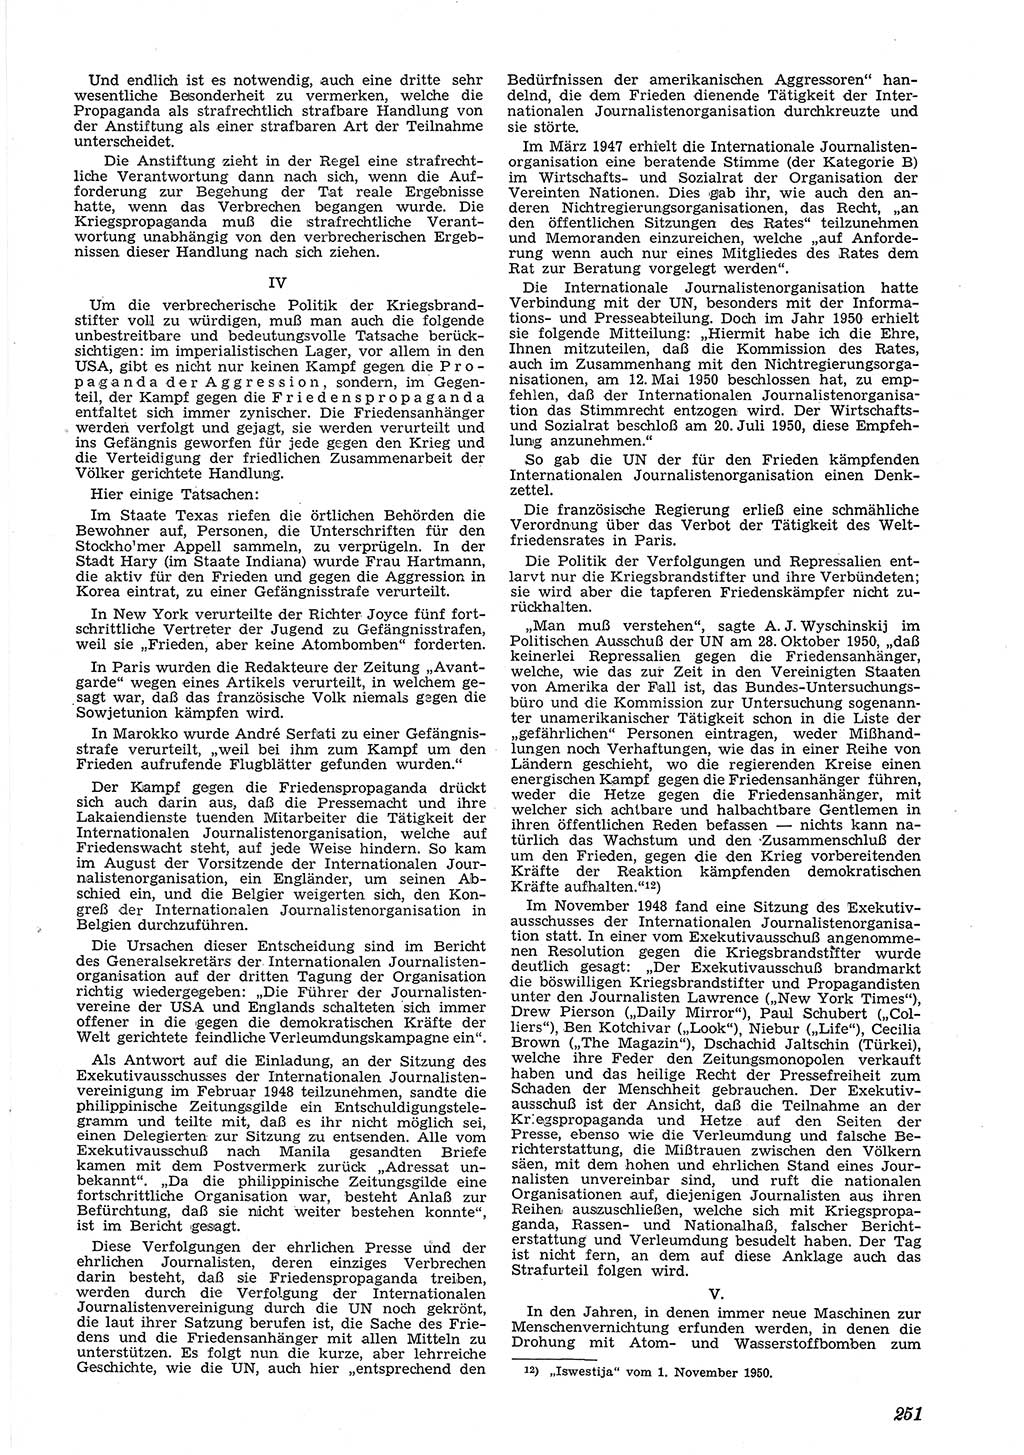 Neue Justiz (NJ), Zeitschrift für Recht und Rechtswissenschaft [Deutsche Demokratische Republik (DDR)], 5. Jahrgang 1951, Seite 251 (NJ DDR 1951, S. 251)